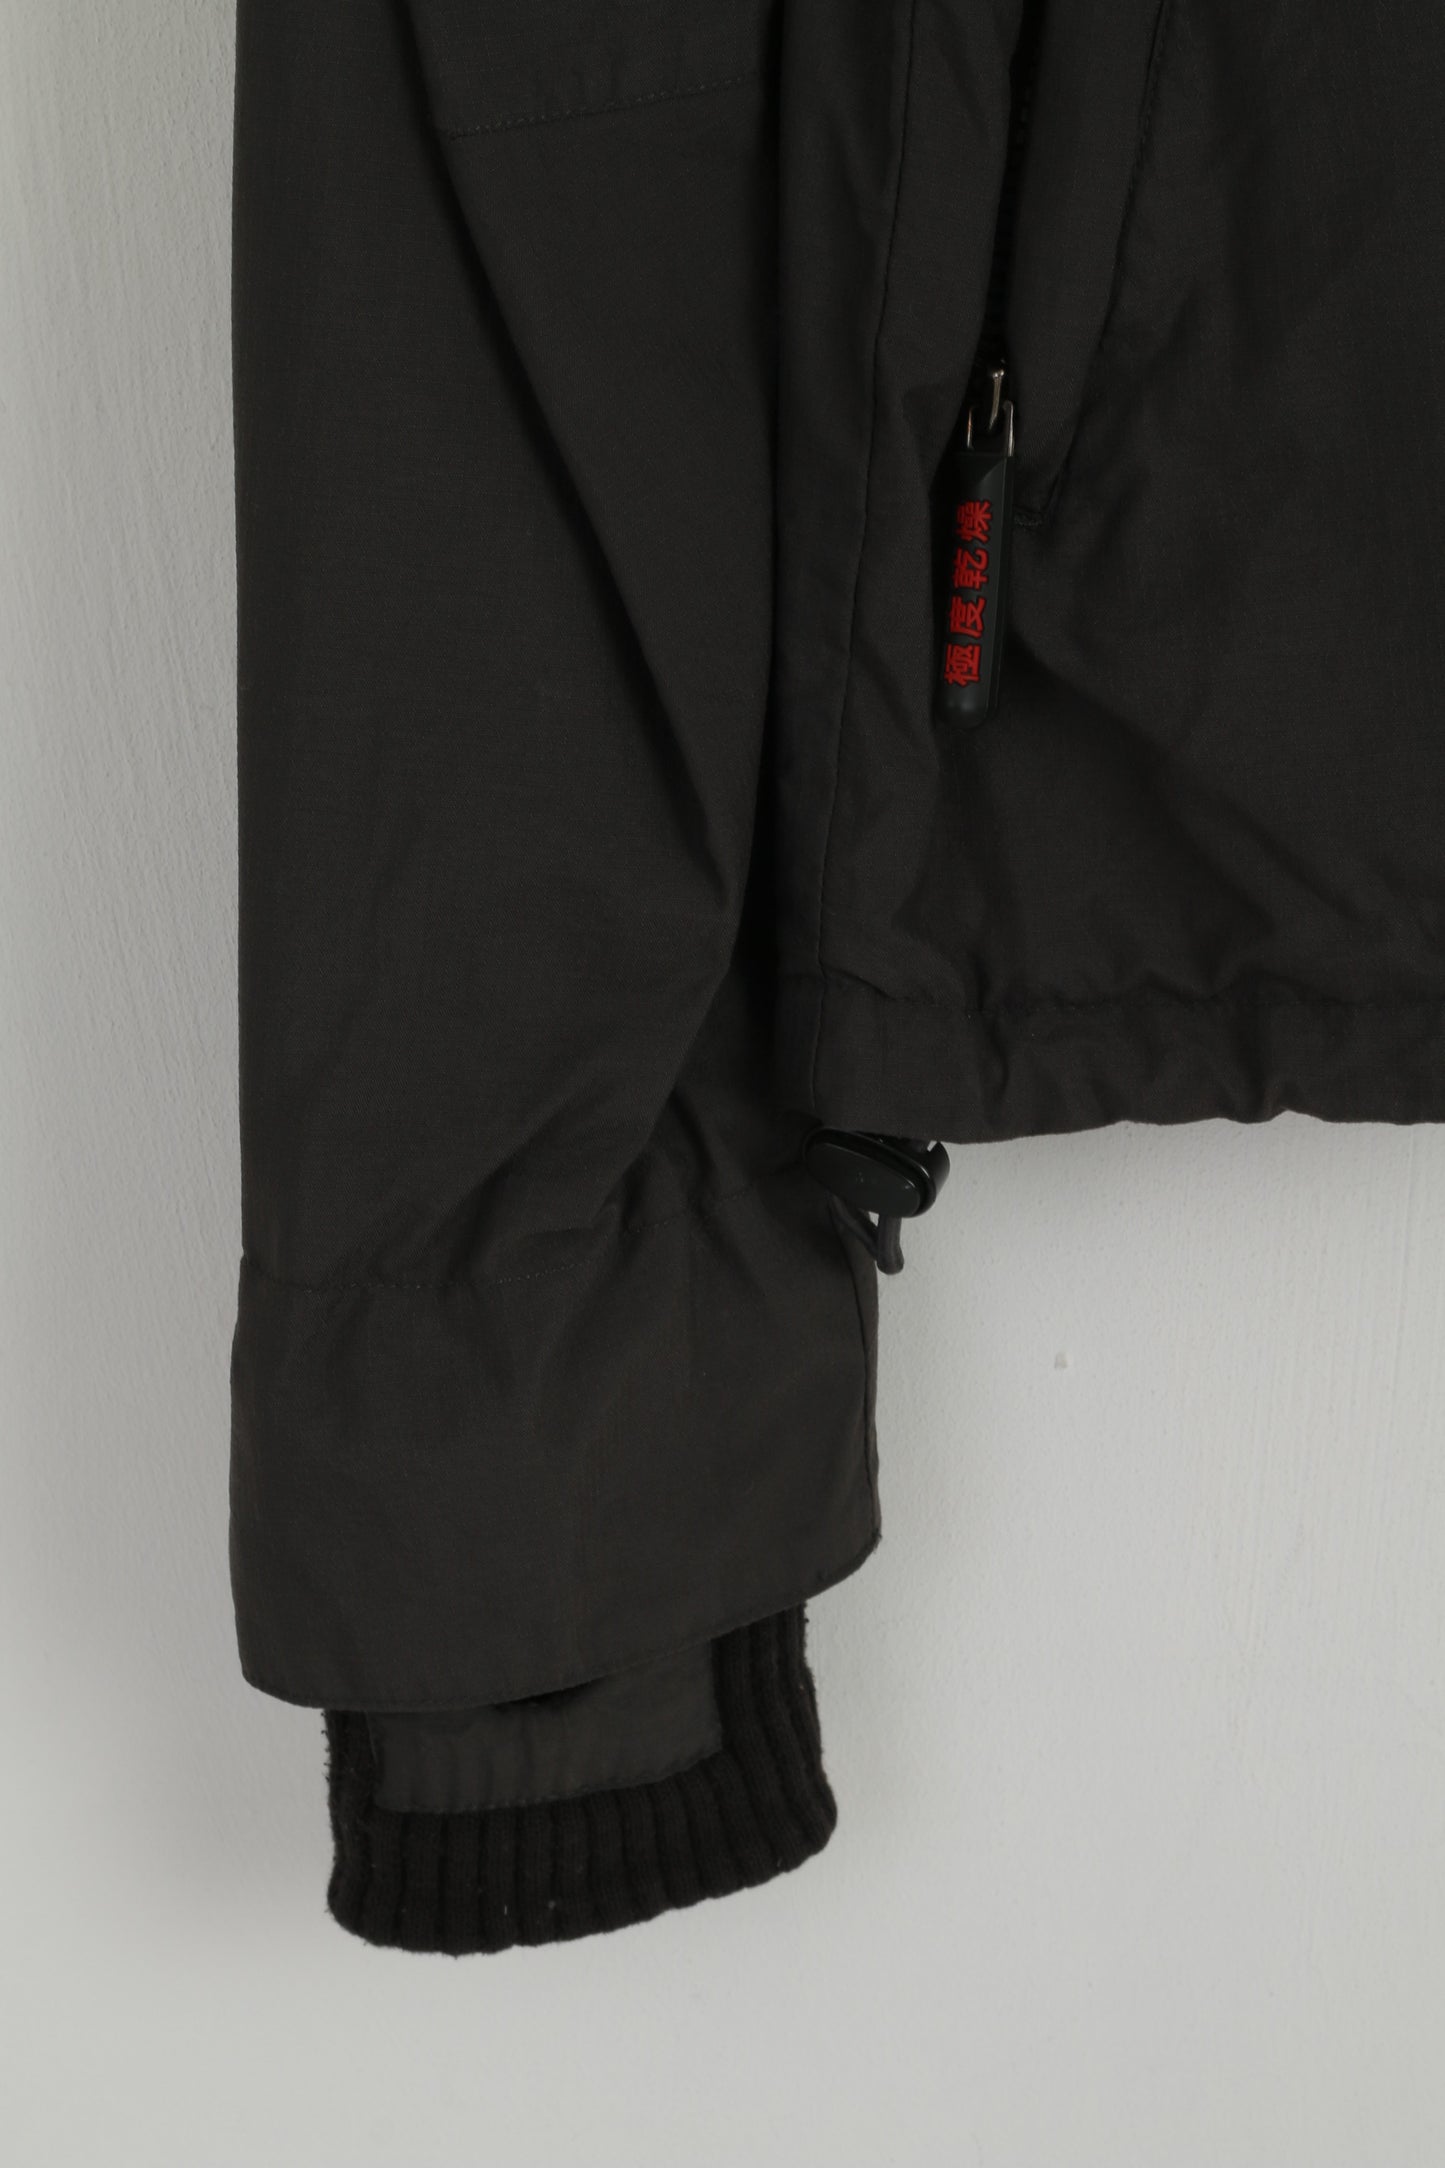 Giacca da uomo M Superdry grigia con 3 cerniere in nylon impermeabile giacca a vento casual